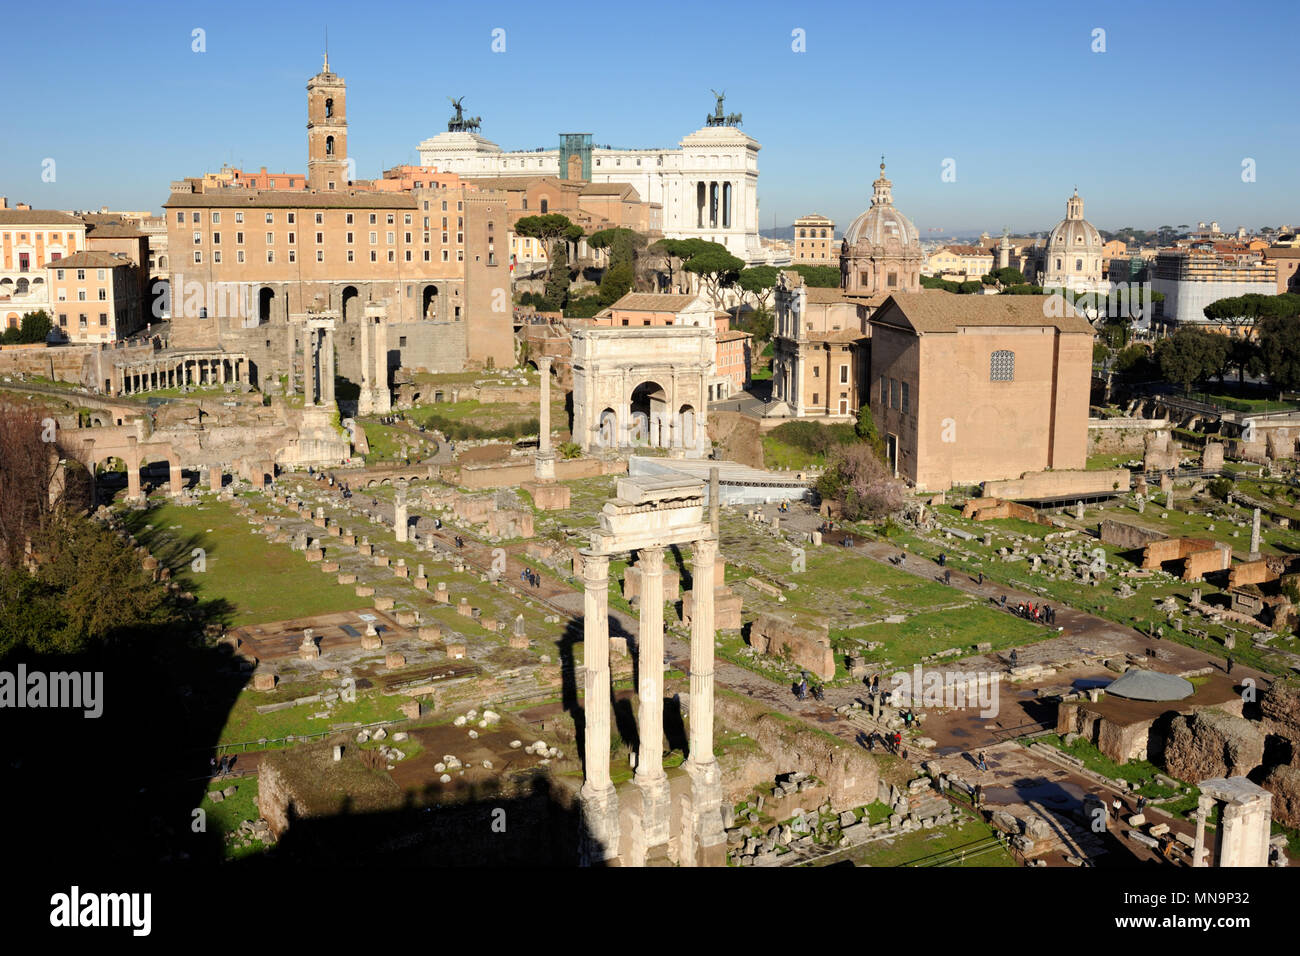 Italia, Roma, foro romano Foto de stock